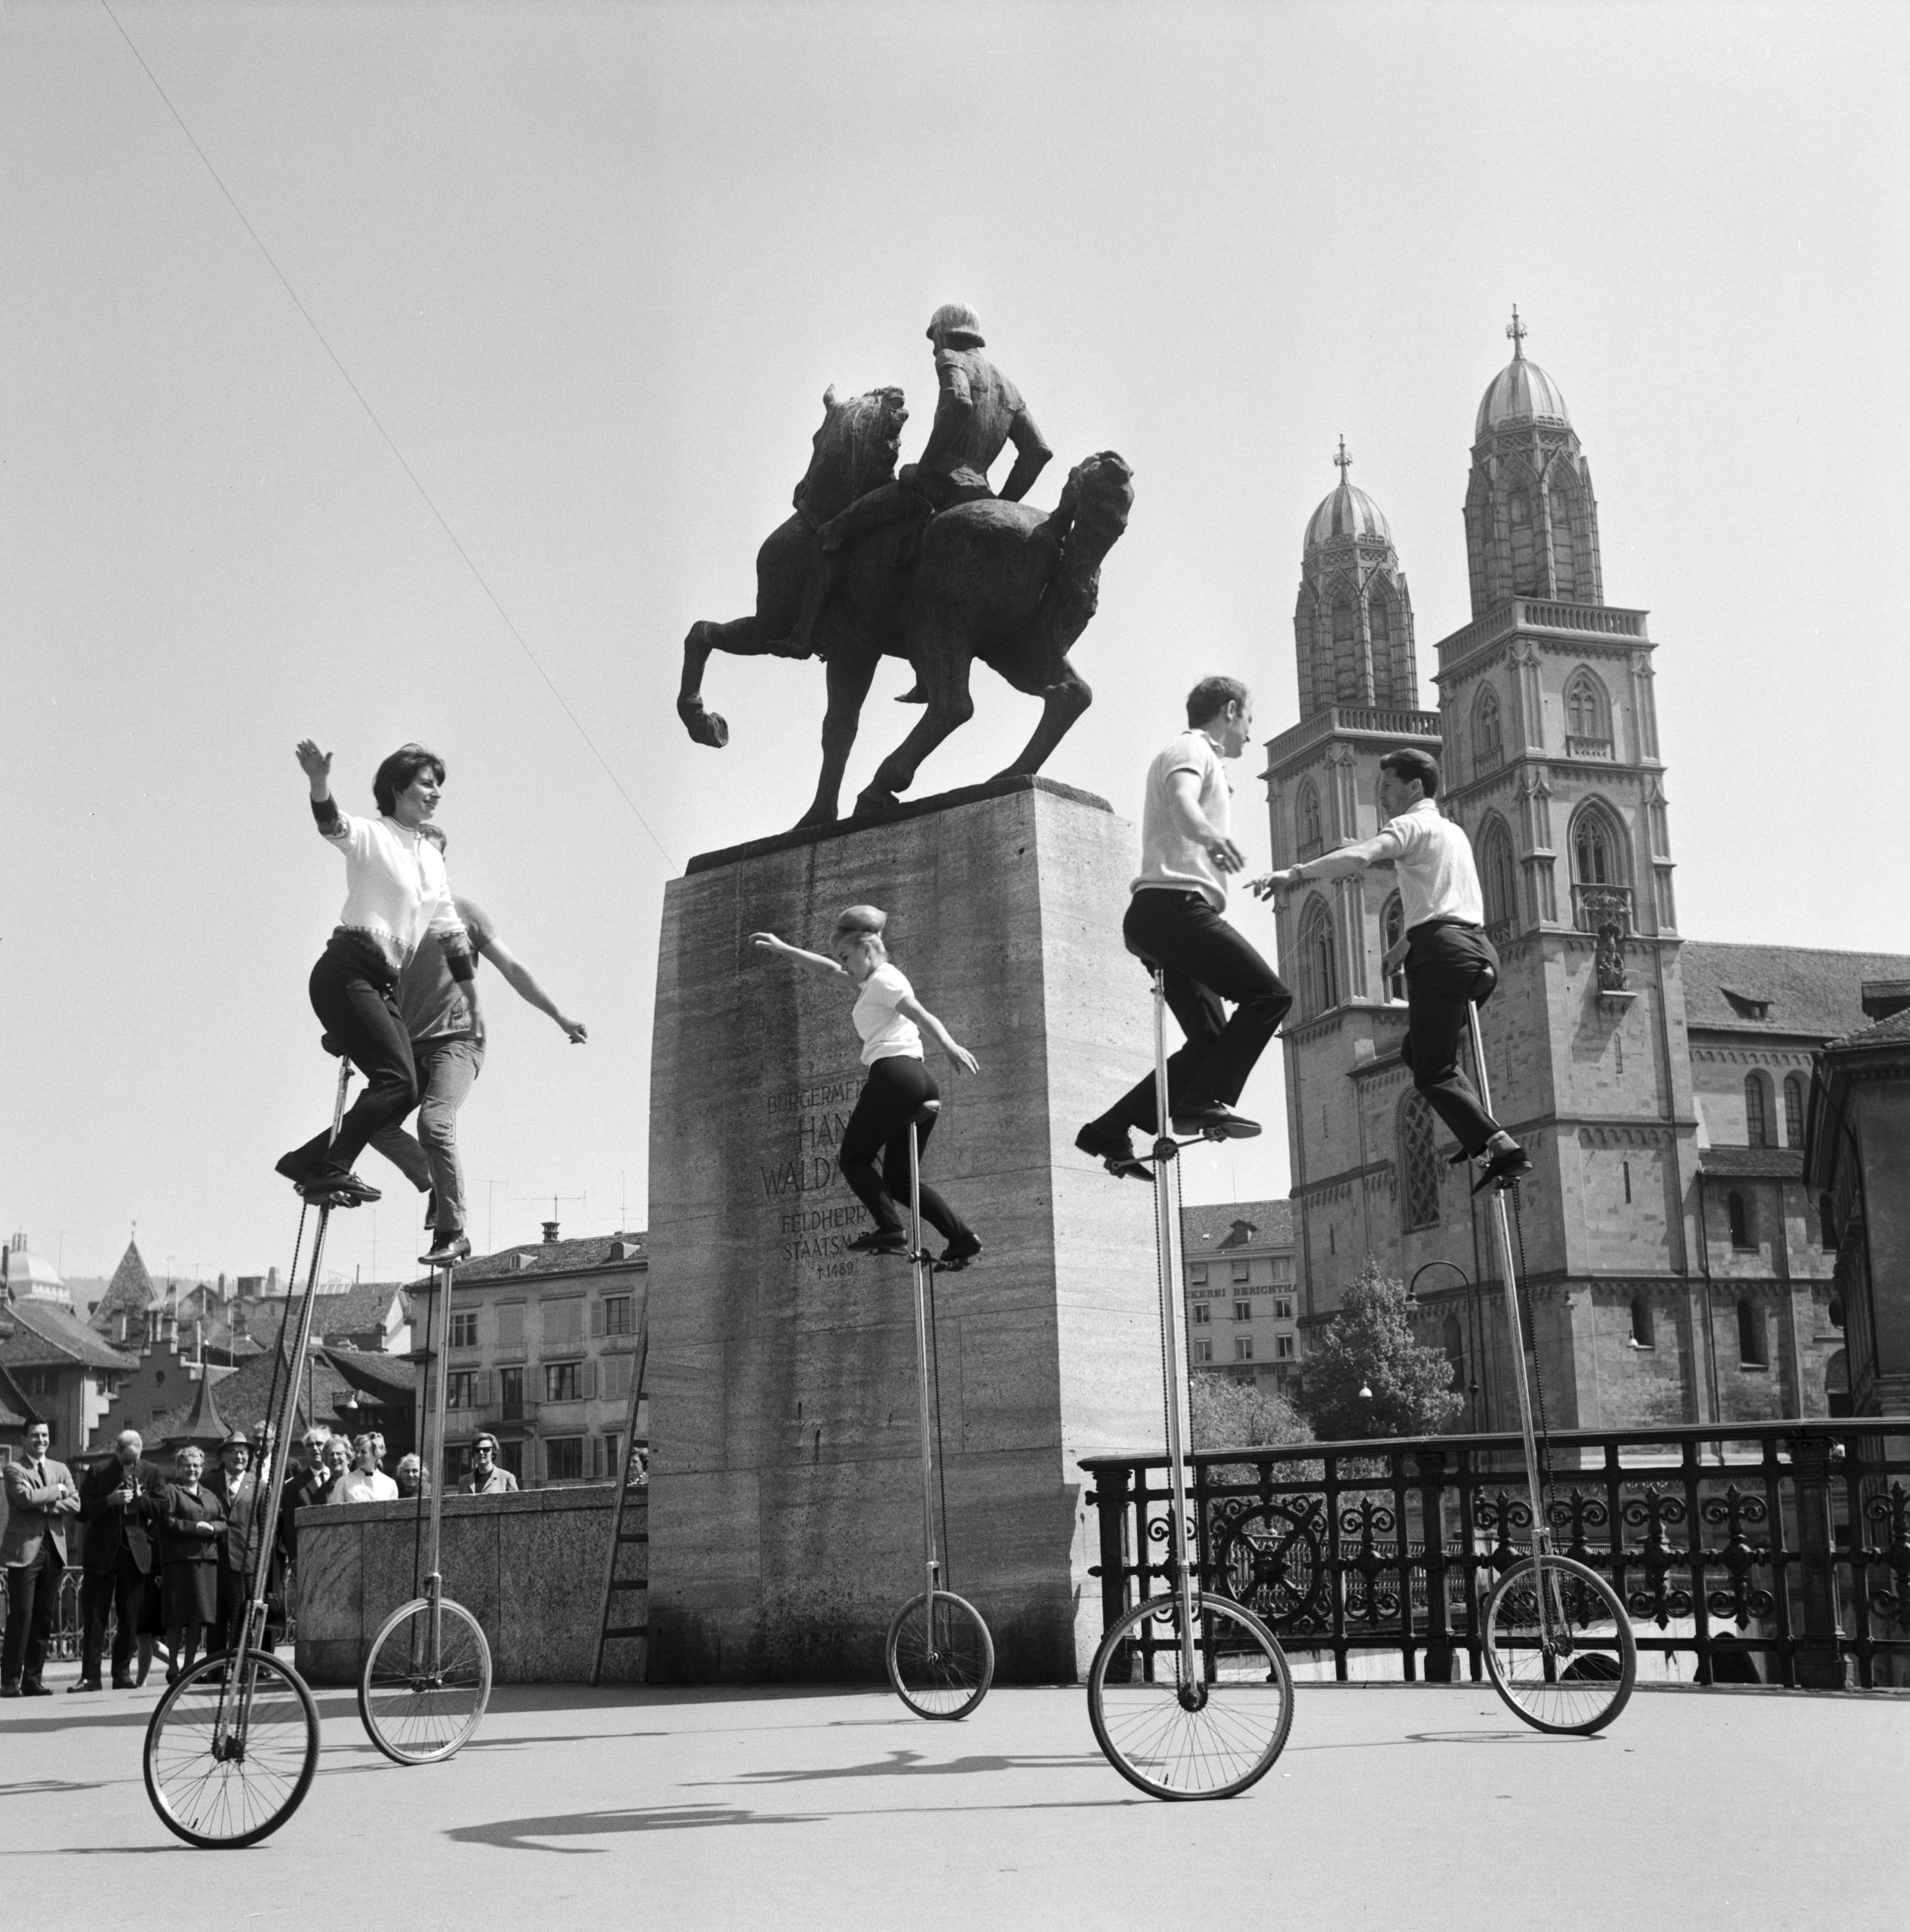 فنانون استعراضيون فوق دراجات عالية جدا بعجلة واحدة